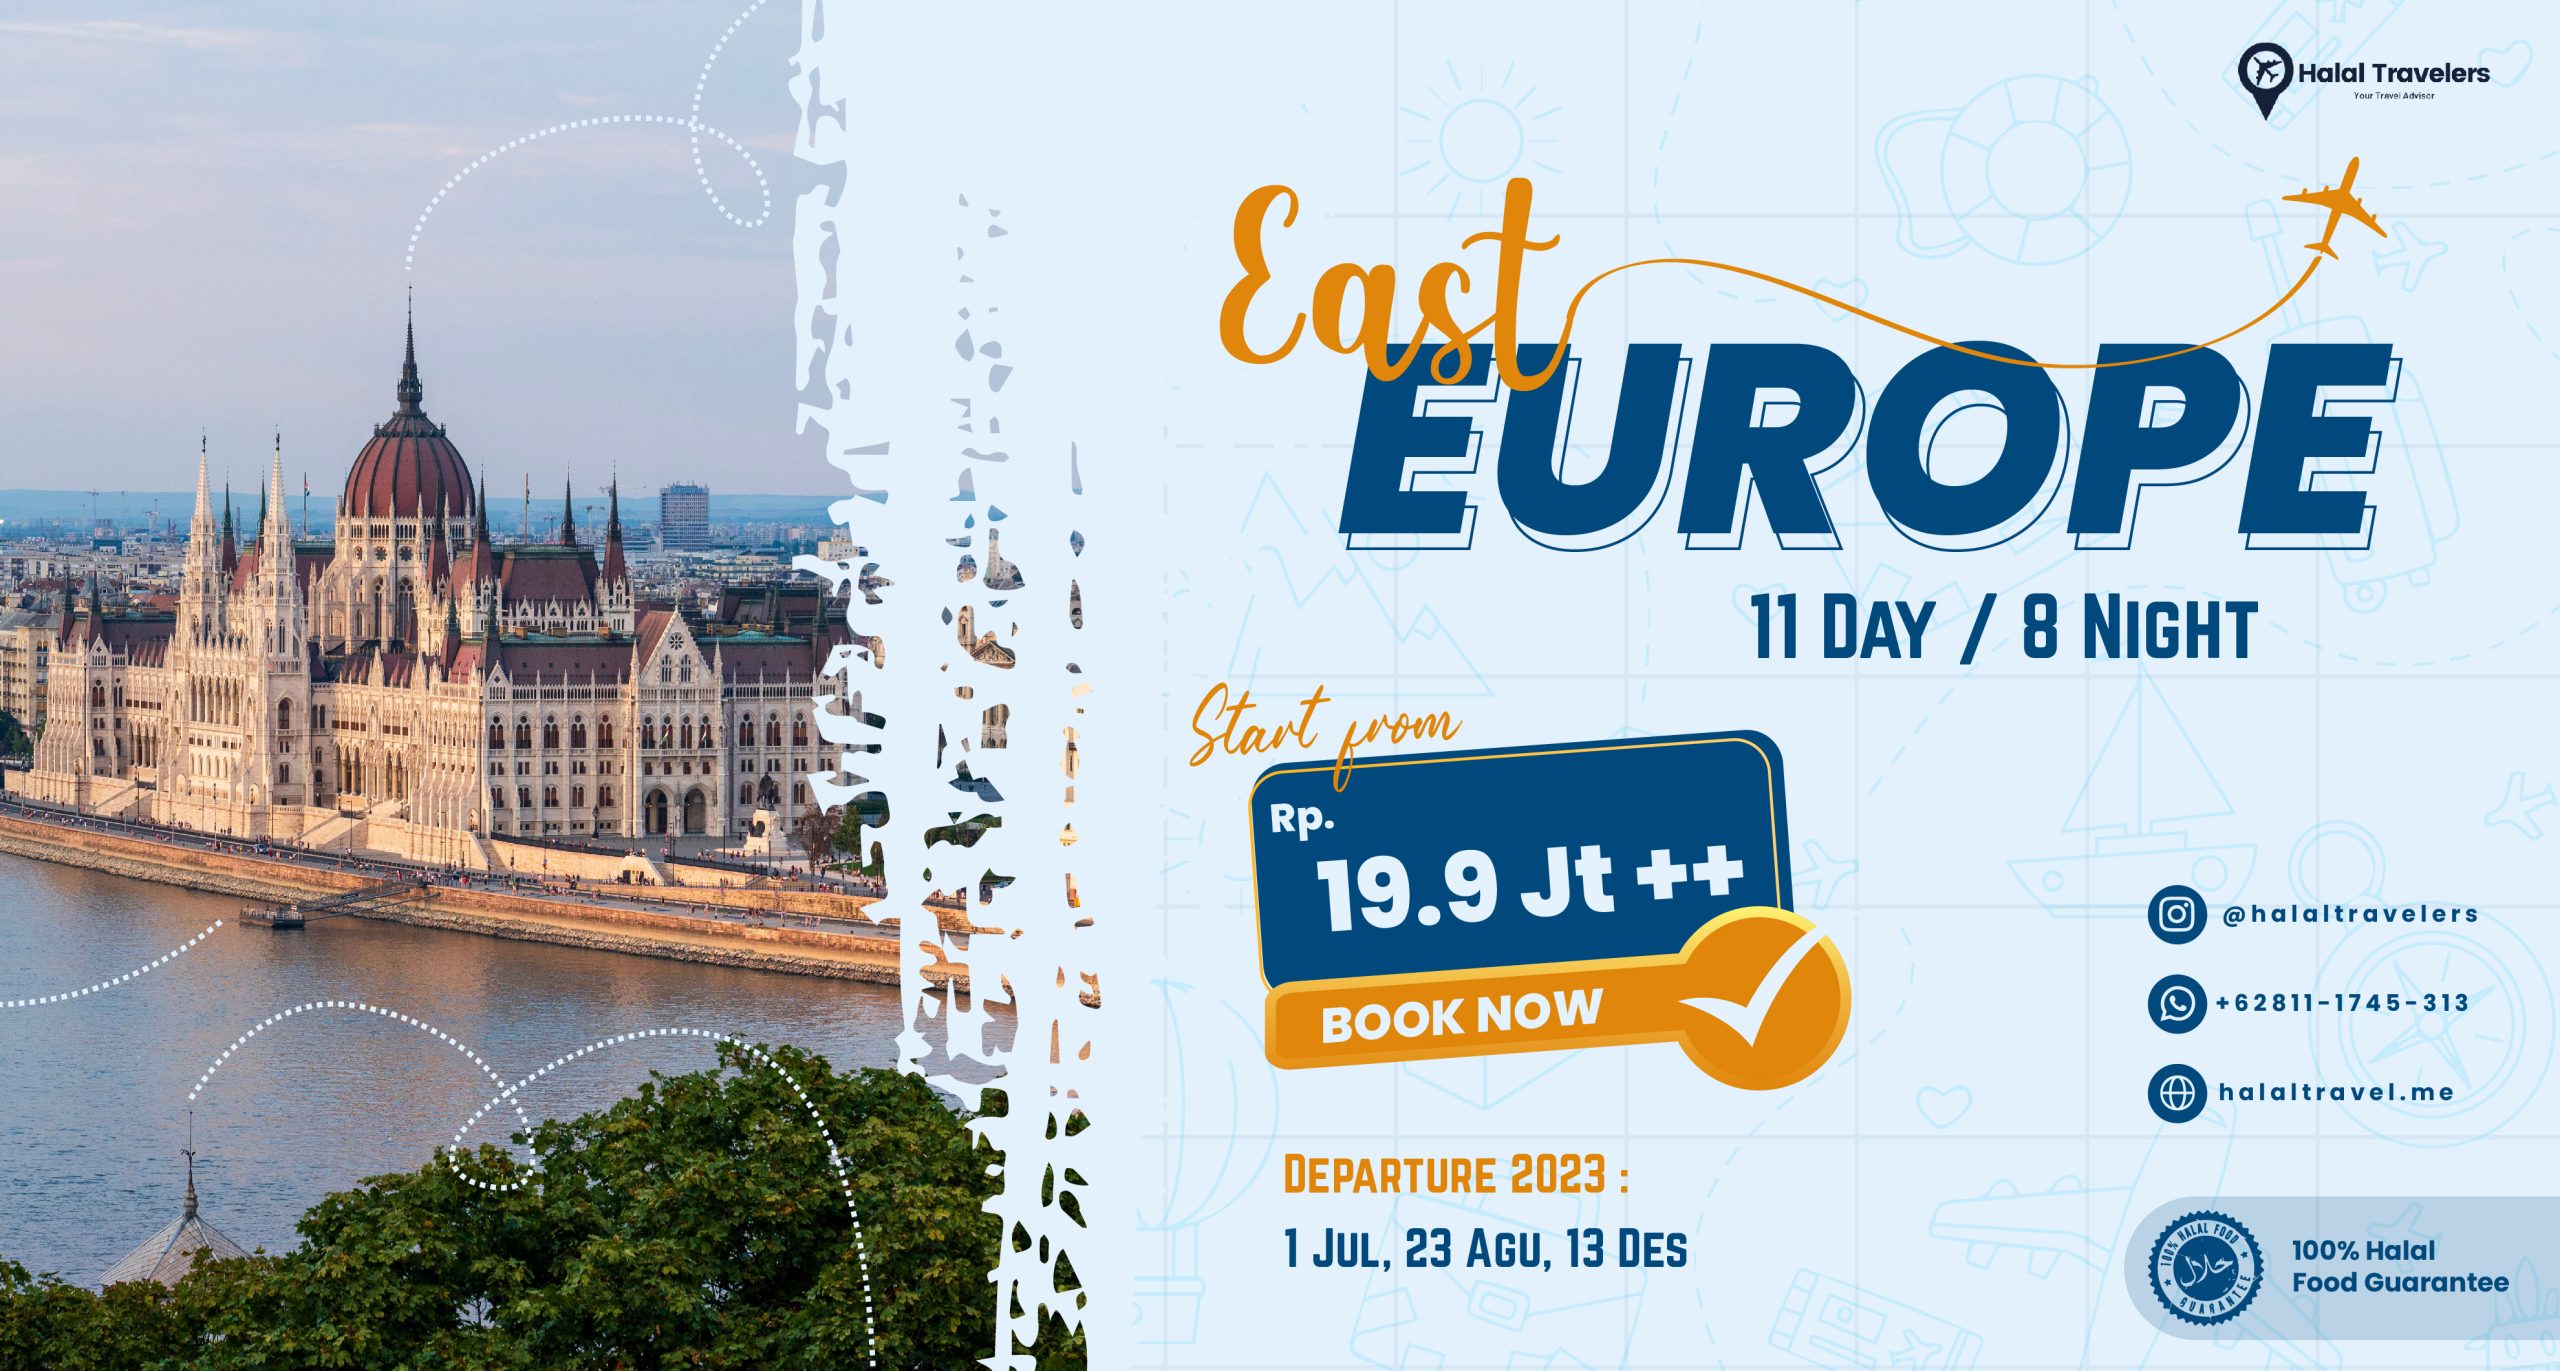 paket travel tour eropa timur west europe